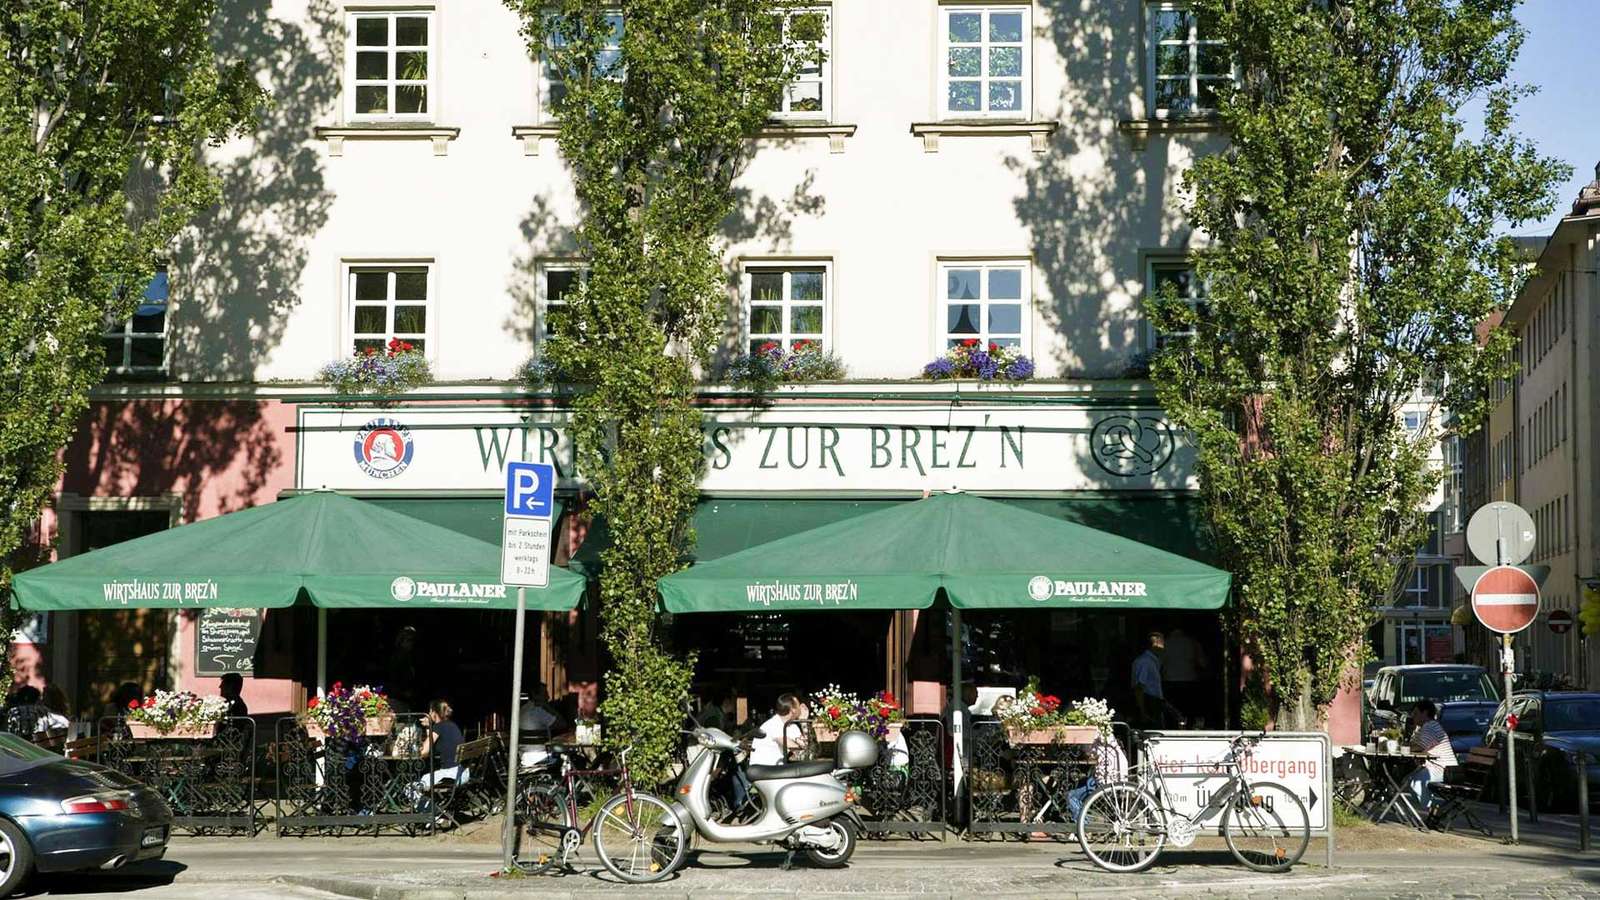 Wirtshaus zur Brez’n: Ein gemütlicher bayerischer Klassiker in Schwabing